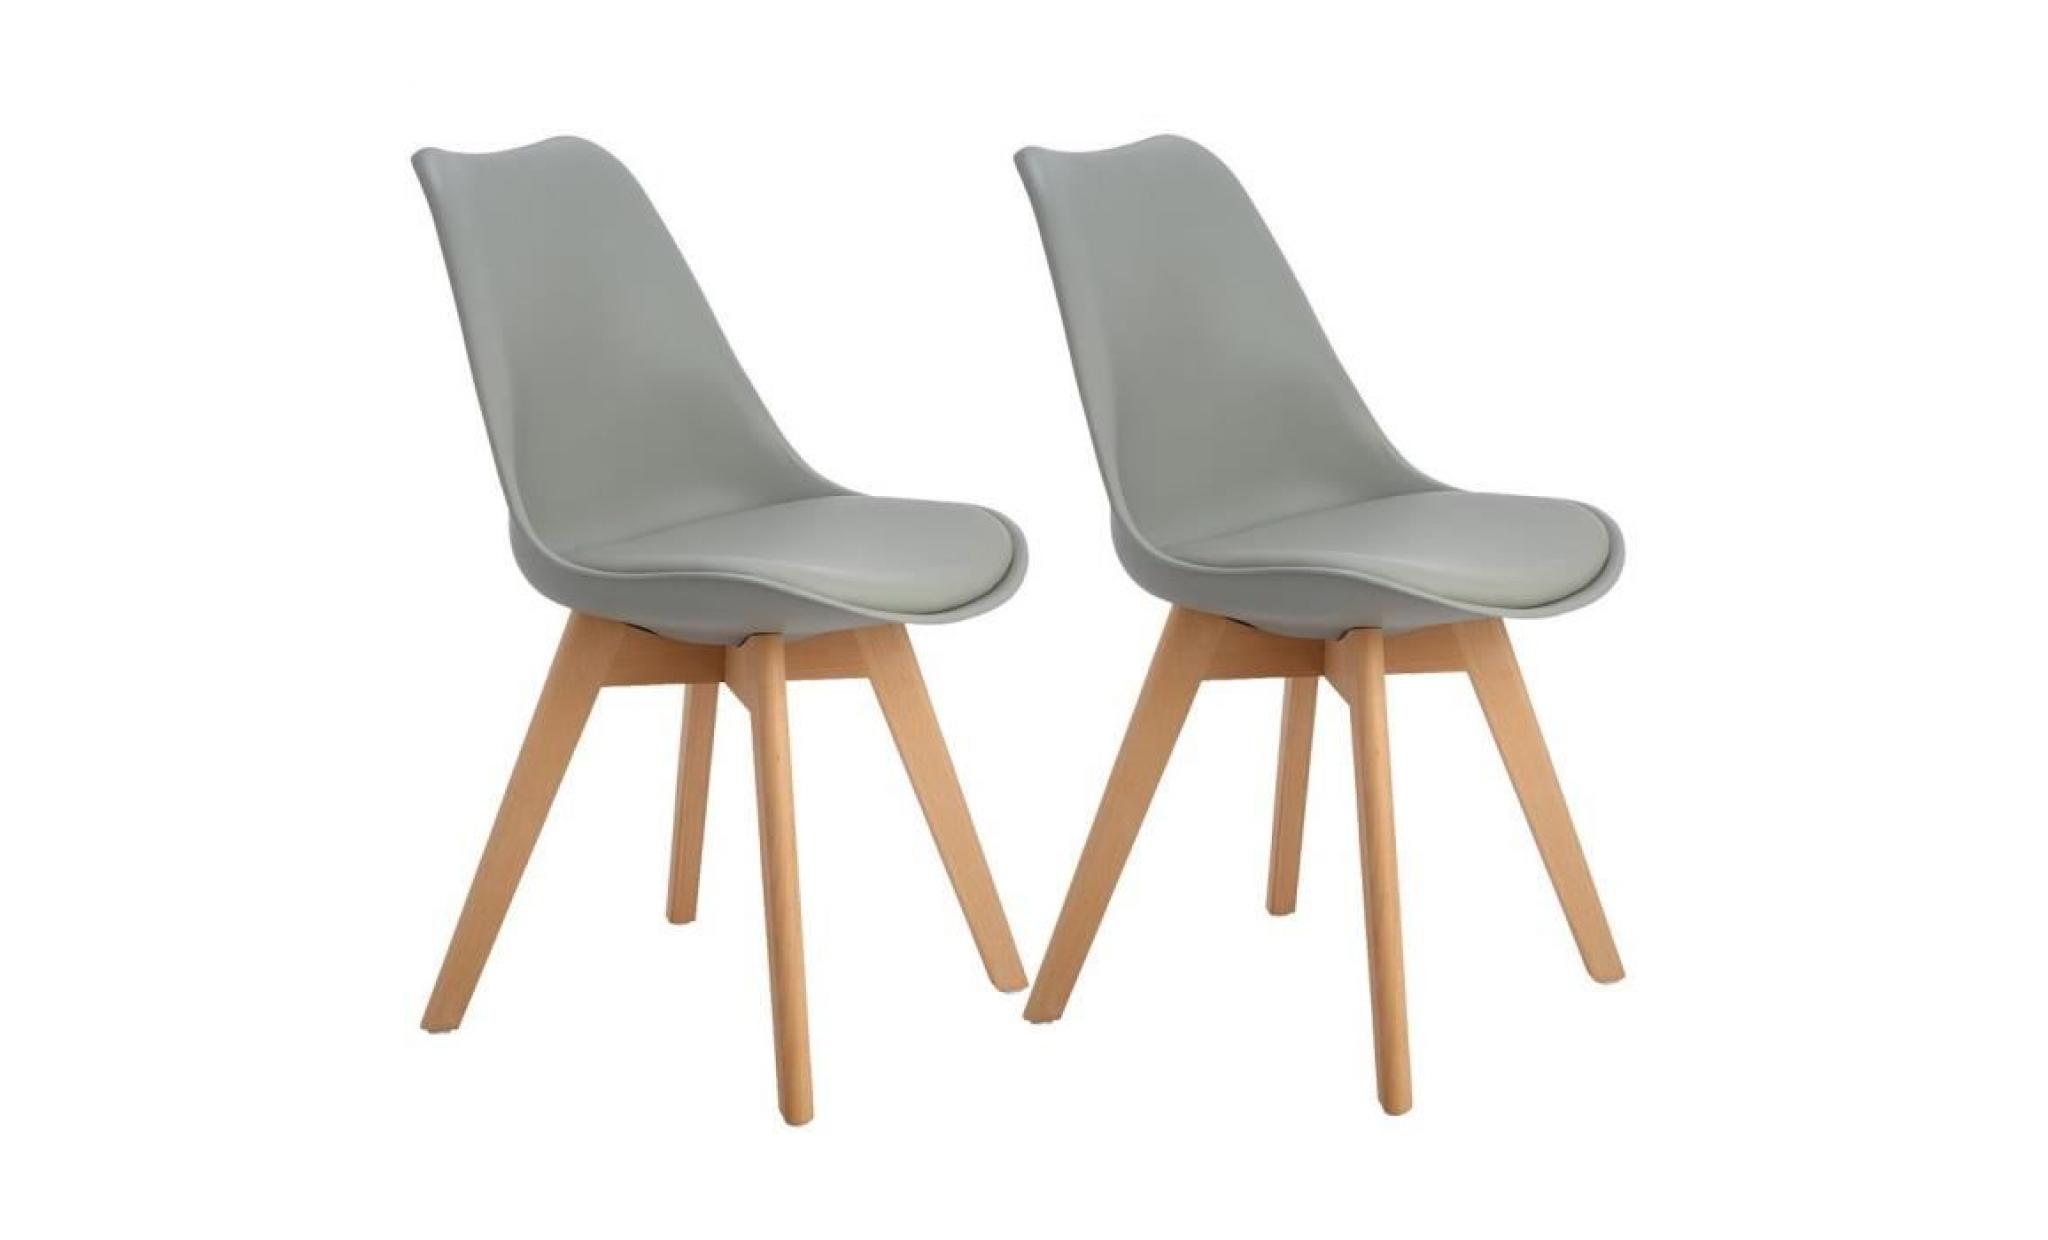 jkk lot de 2 chaises salle a manger scandinave avec pieds en bois de hêtre massif,(tm) rétro tulip chaises de bureau   gris clair